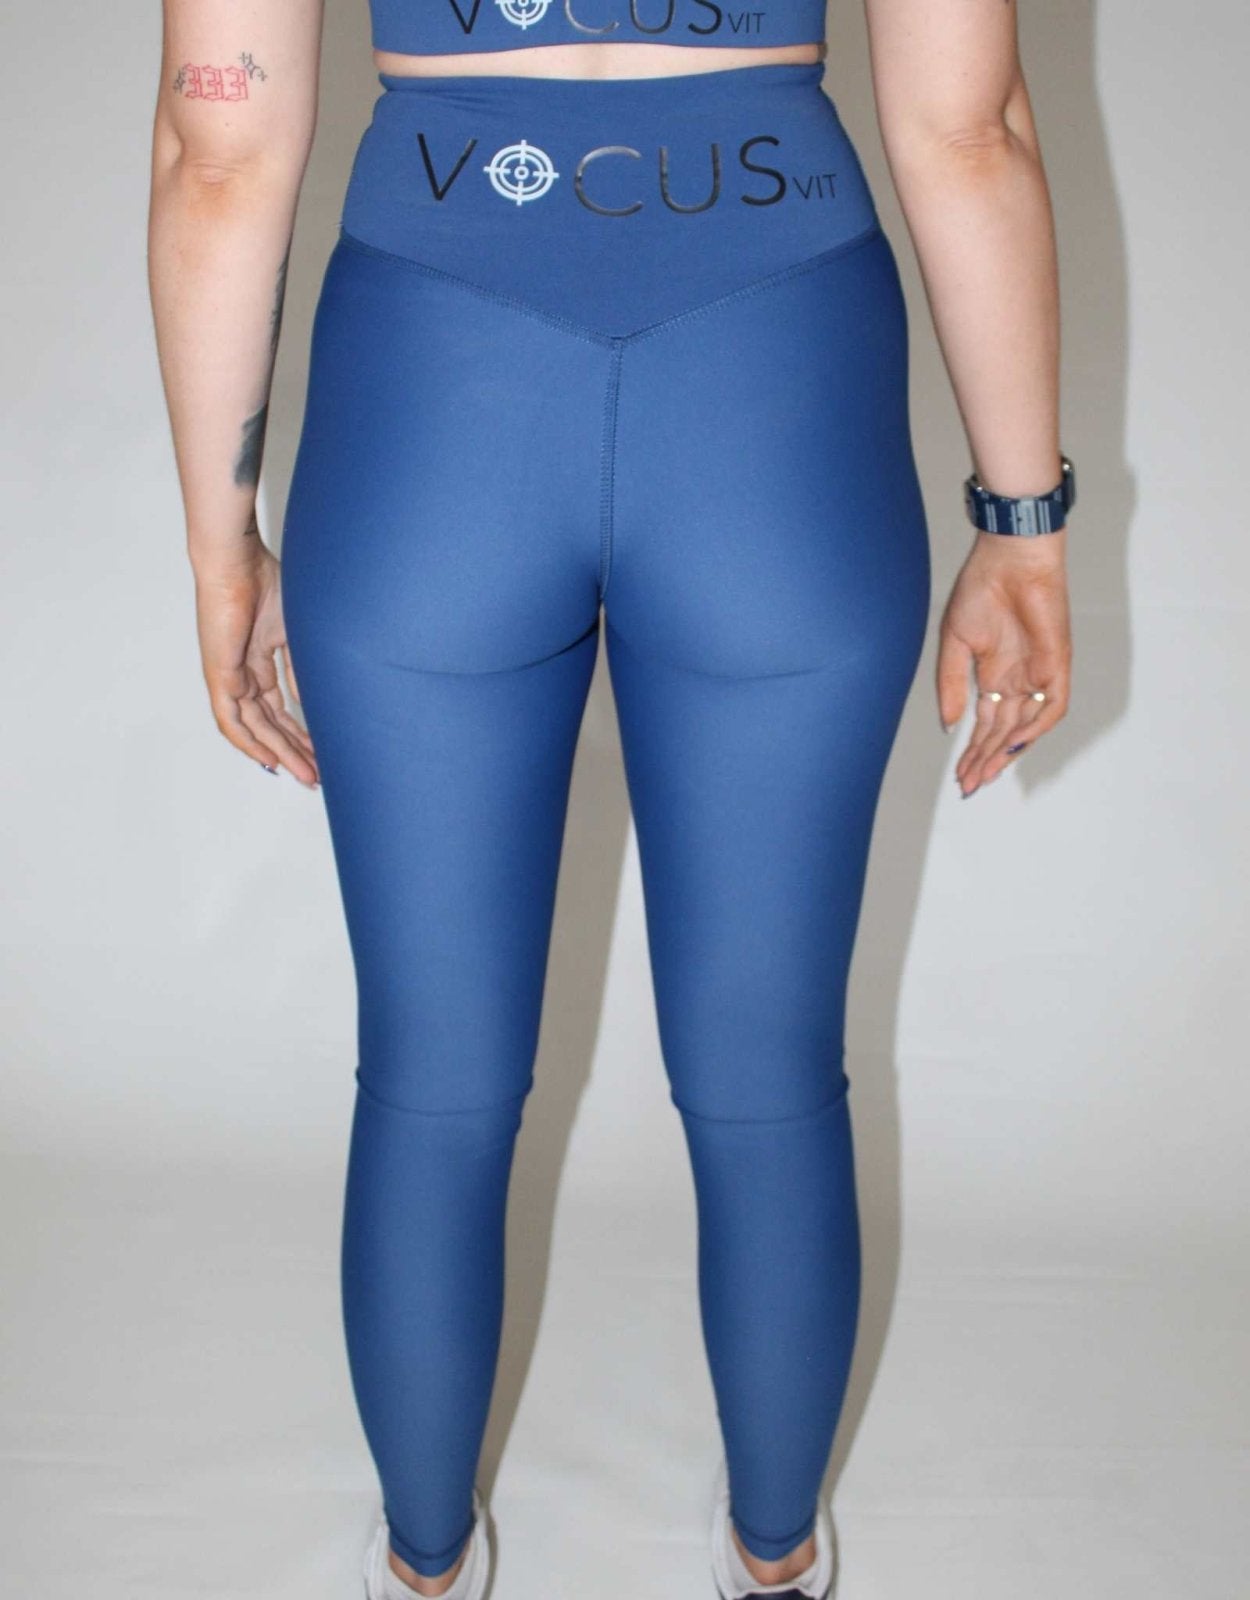 https://vocusvit.com/cdn/shop/products/supreme-full-length-leggings-blue-800286.jpg?v=1698347005&width=1445